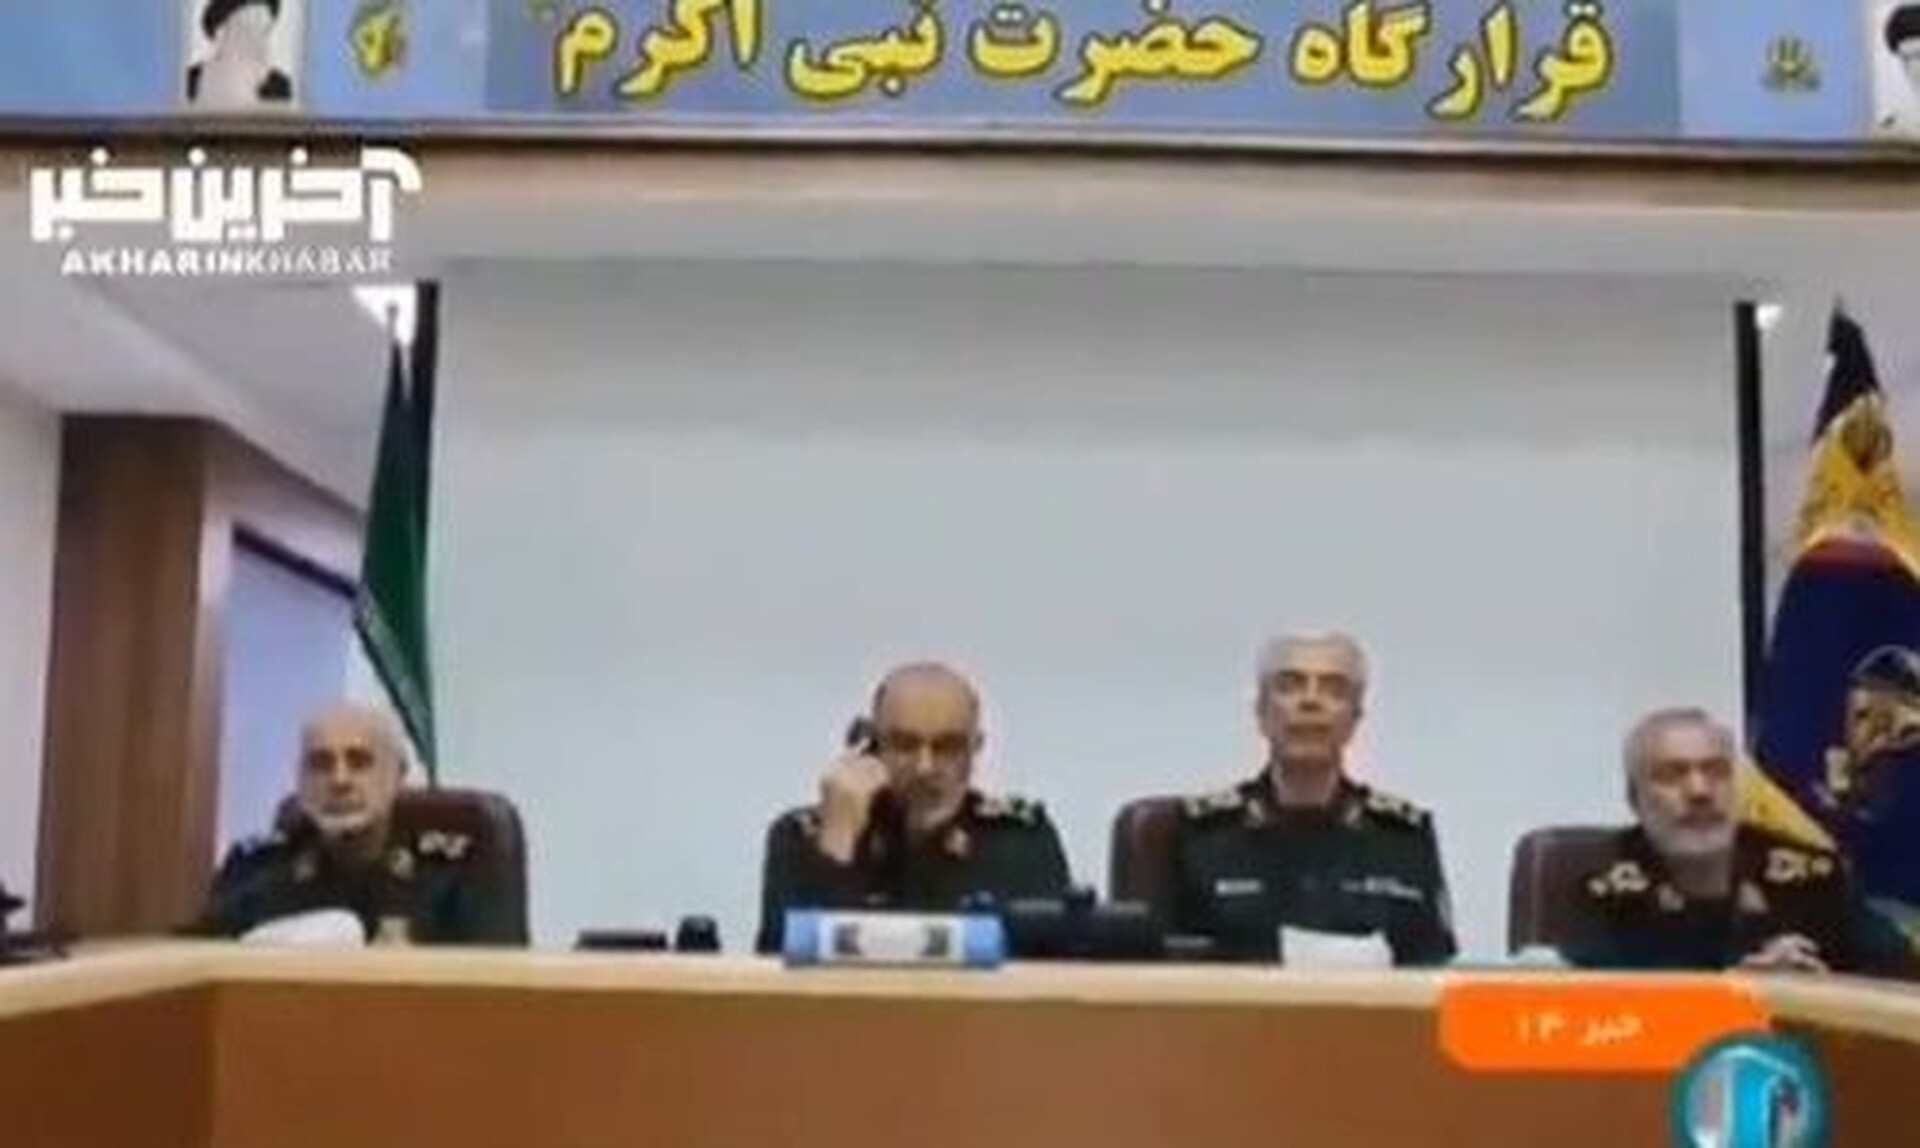 Βίντεο από καταφύγιο στην Τεχεράνη: Ο στρατηγός Σαλαμί διατάζει επίθεση στο Ισραήλ